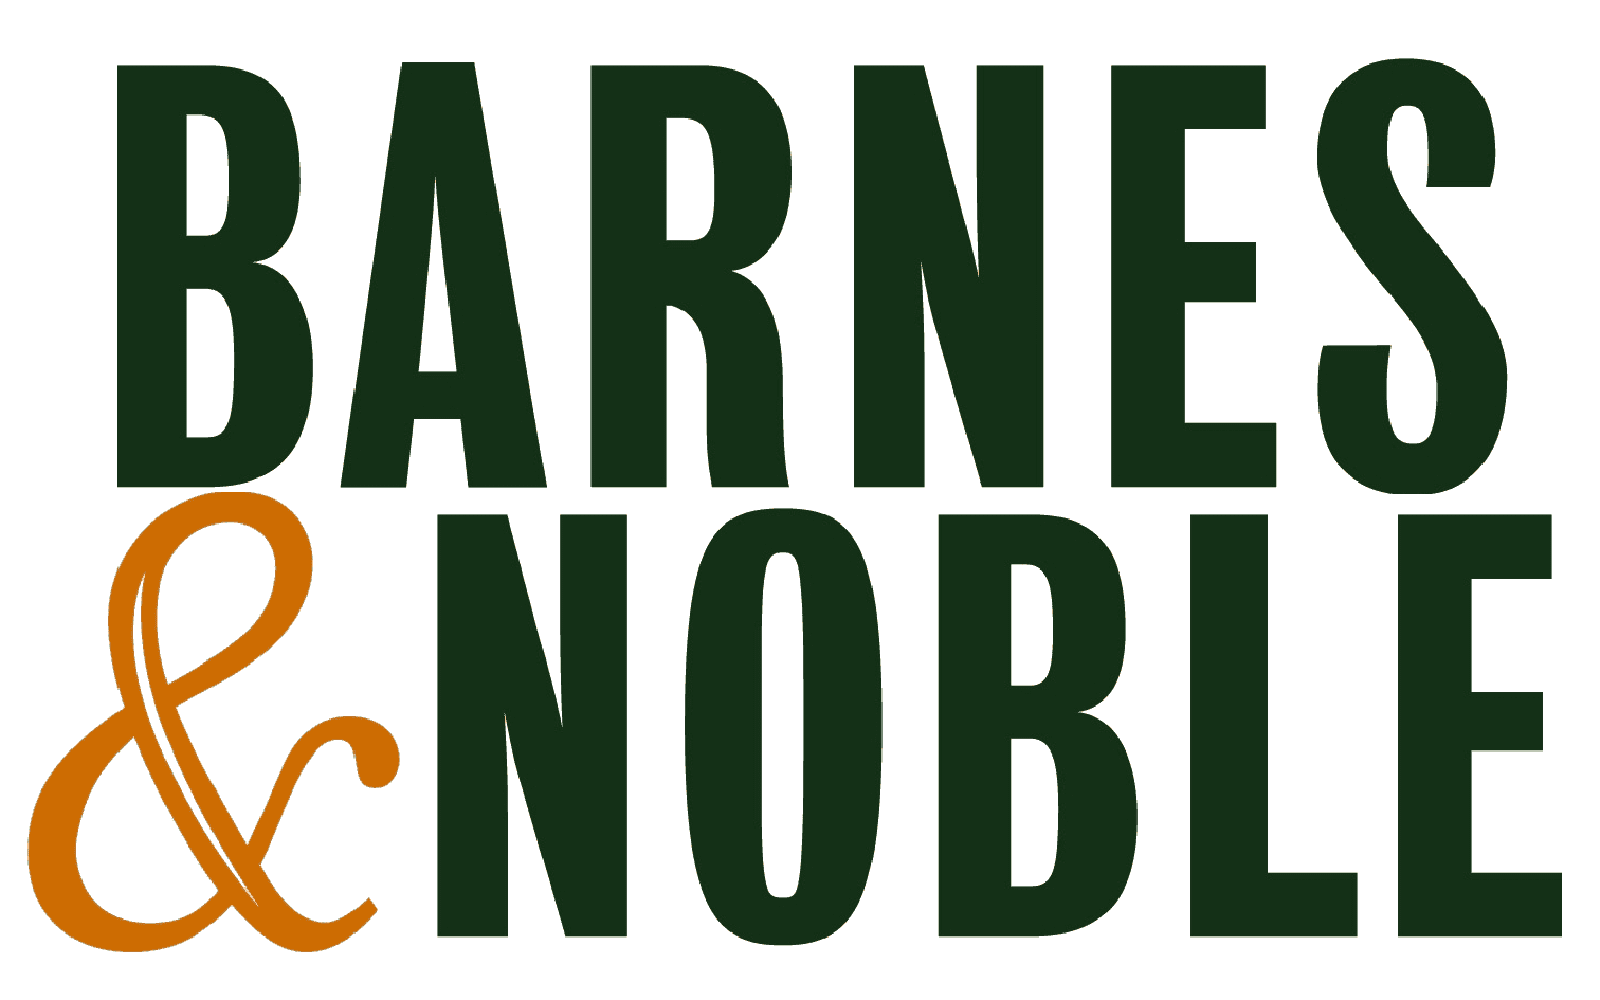 How to Ship Barnes & Noble US Internationally